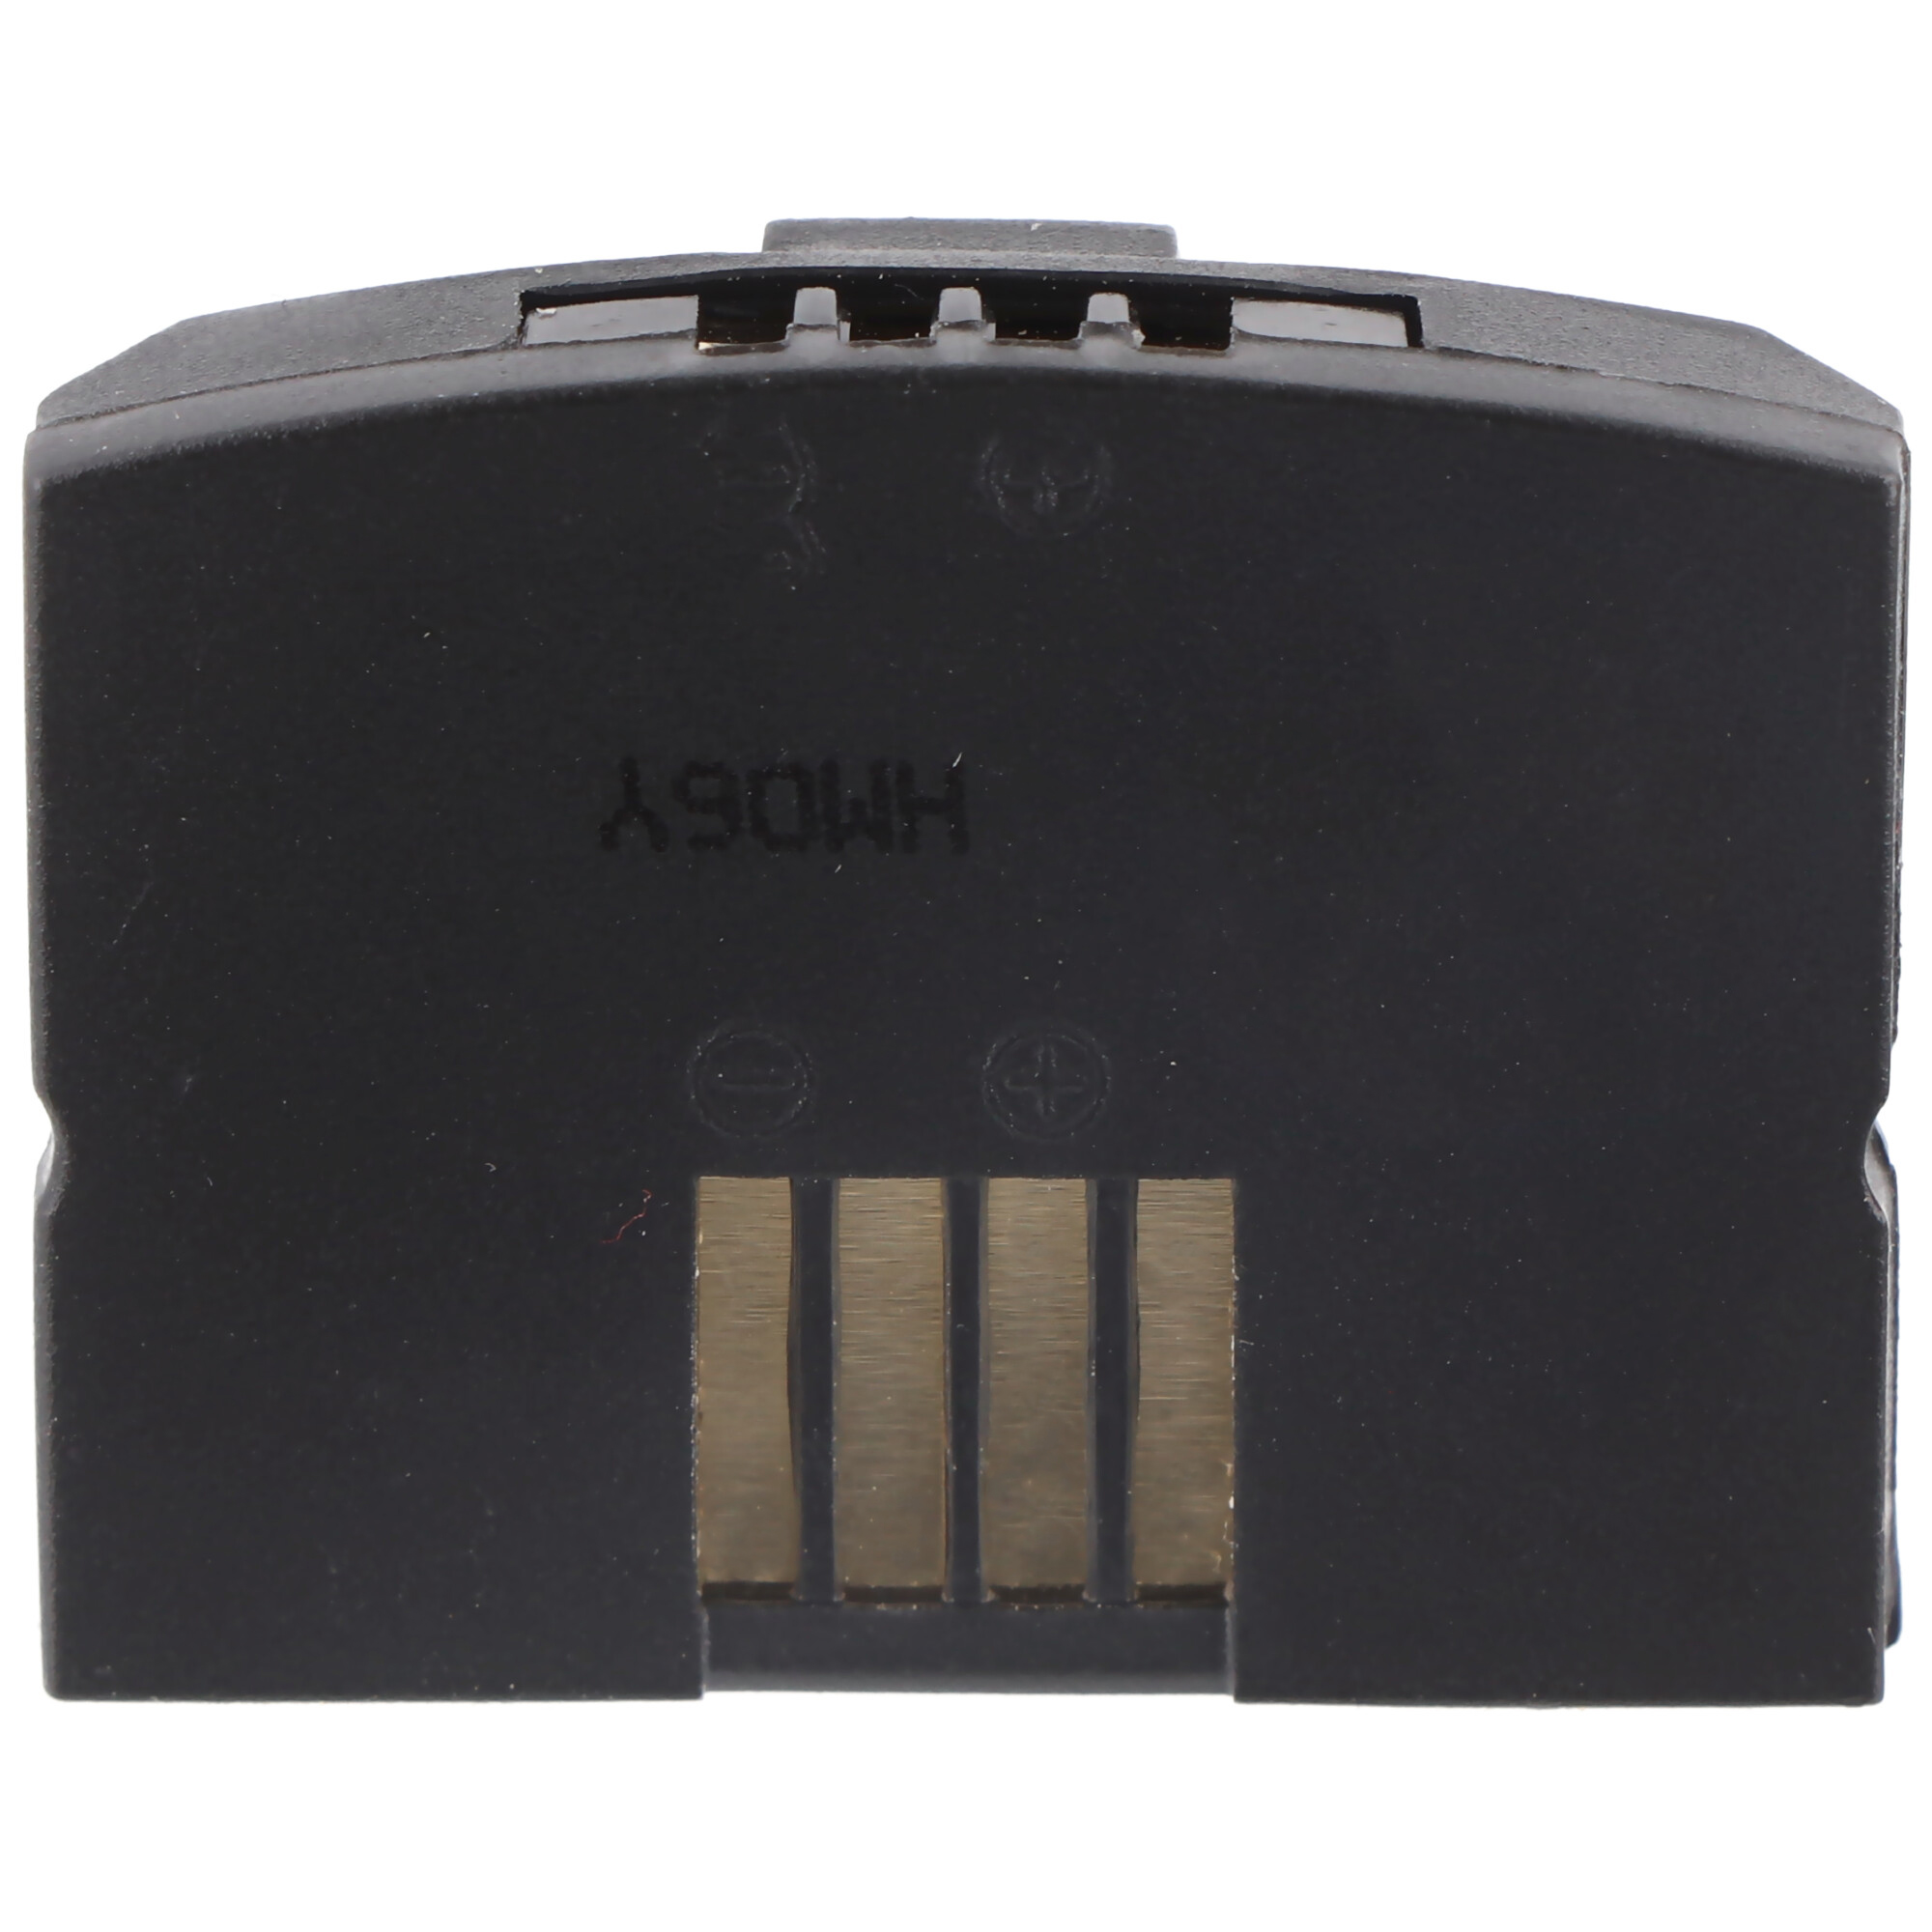 ACCUCELL Akku passend für Sennheiser MP3-Akku, - IS 500898, 150 mAh Li-Ion Lithium-Ionen 410 BA300